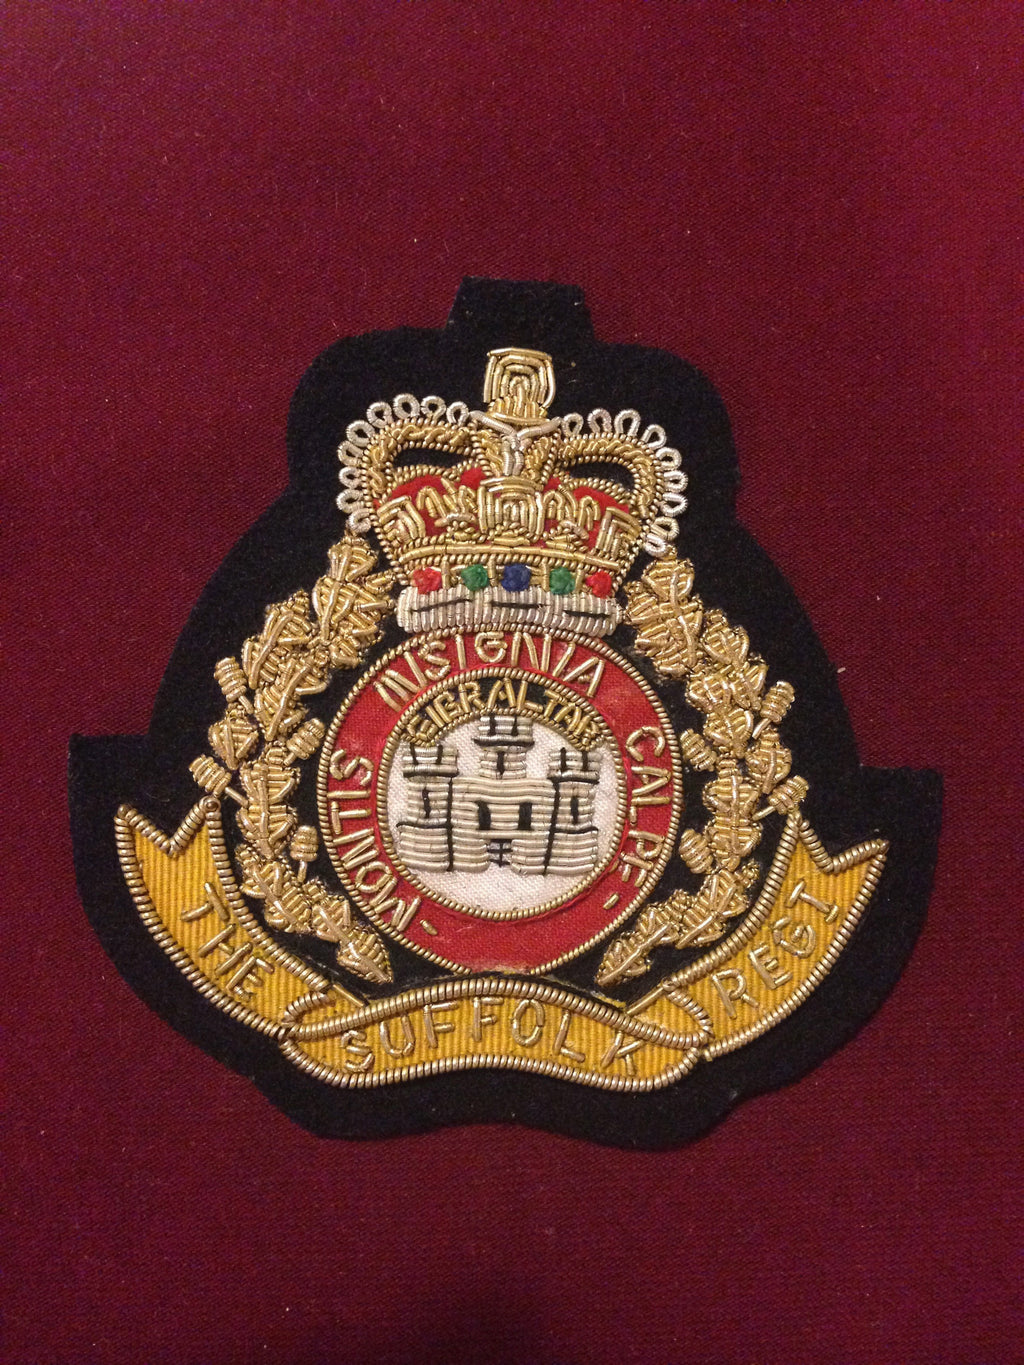 The Suffolk Regiment Blazer badge